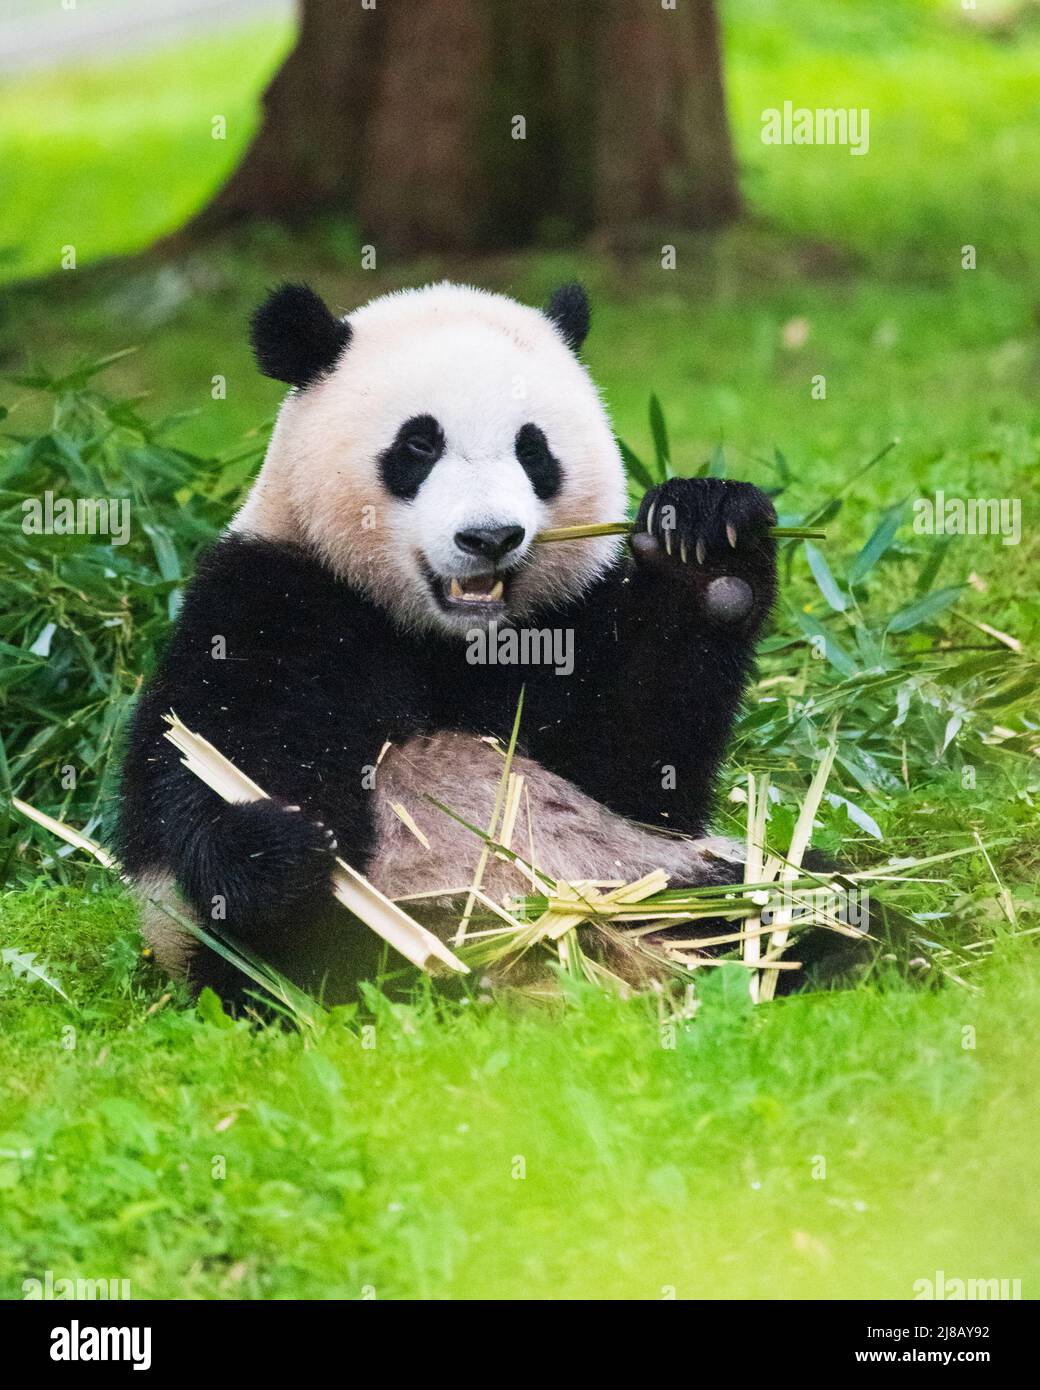 Porträt eines Pandabären im Smithsonian National Zoo, der im Gras sitzt und Bambushaufen frisst. Stockfoto